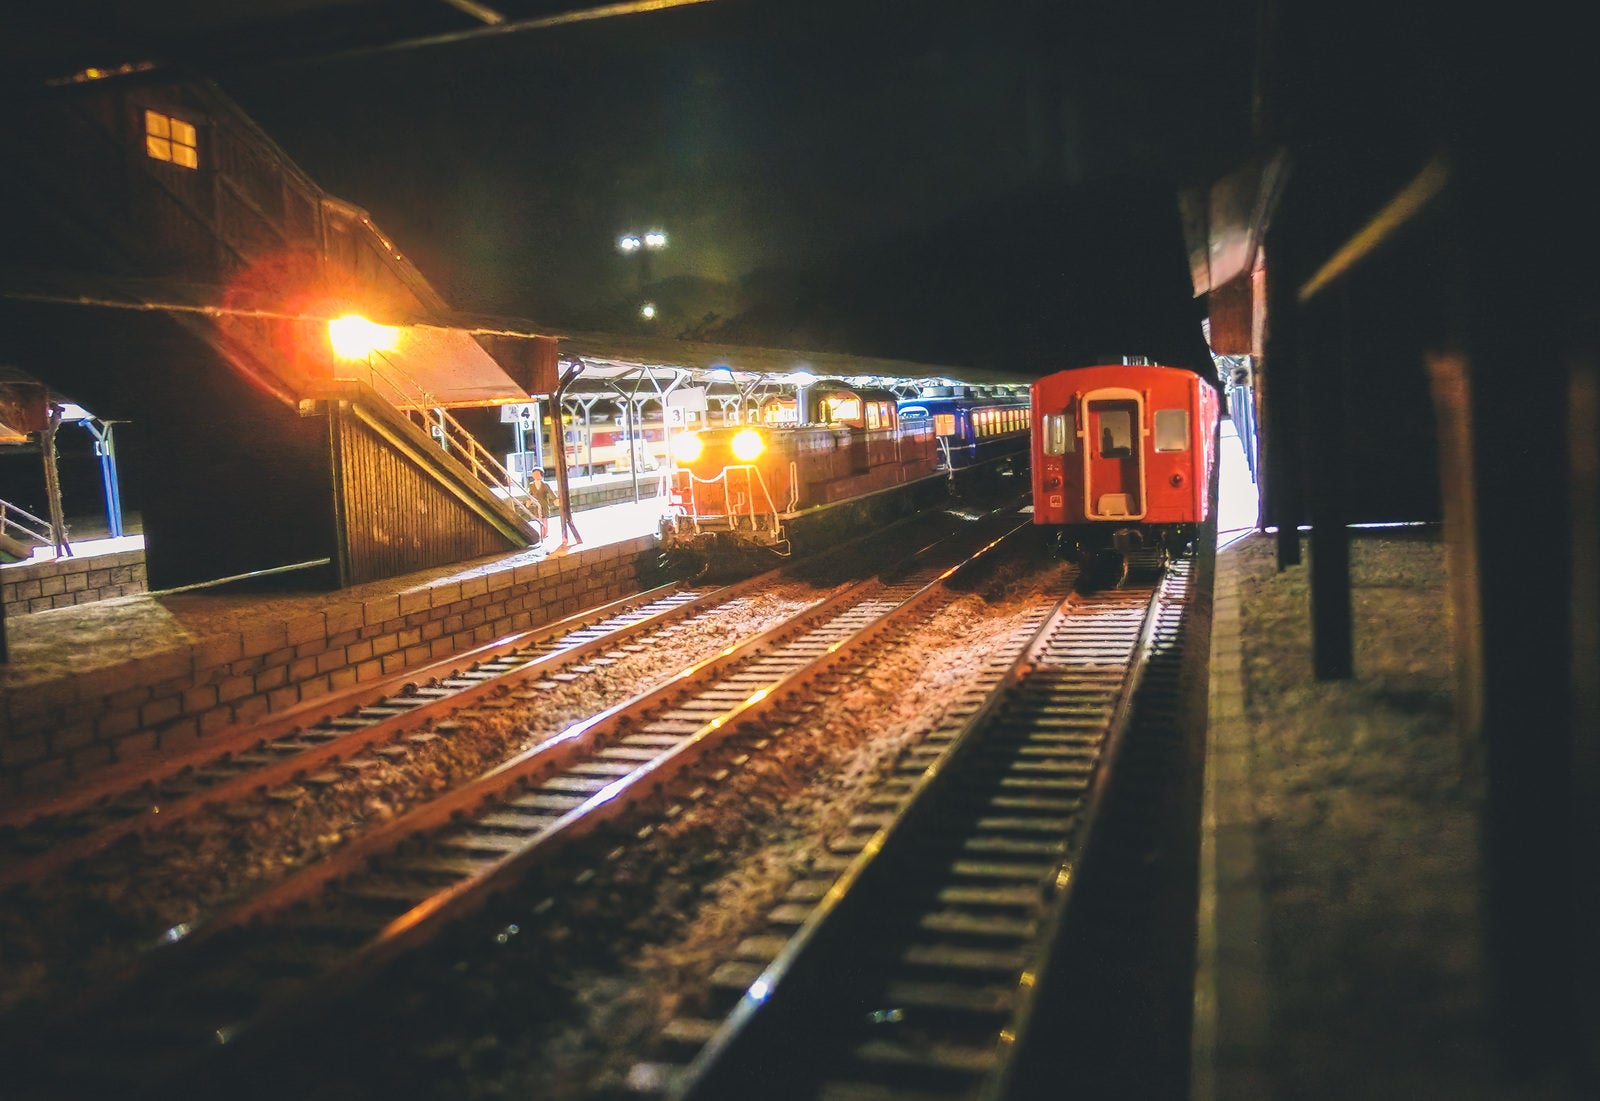 「夜の直方駅ホームのジオラマ」の写真